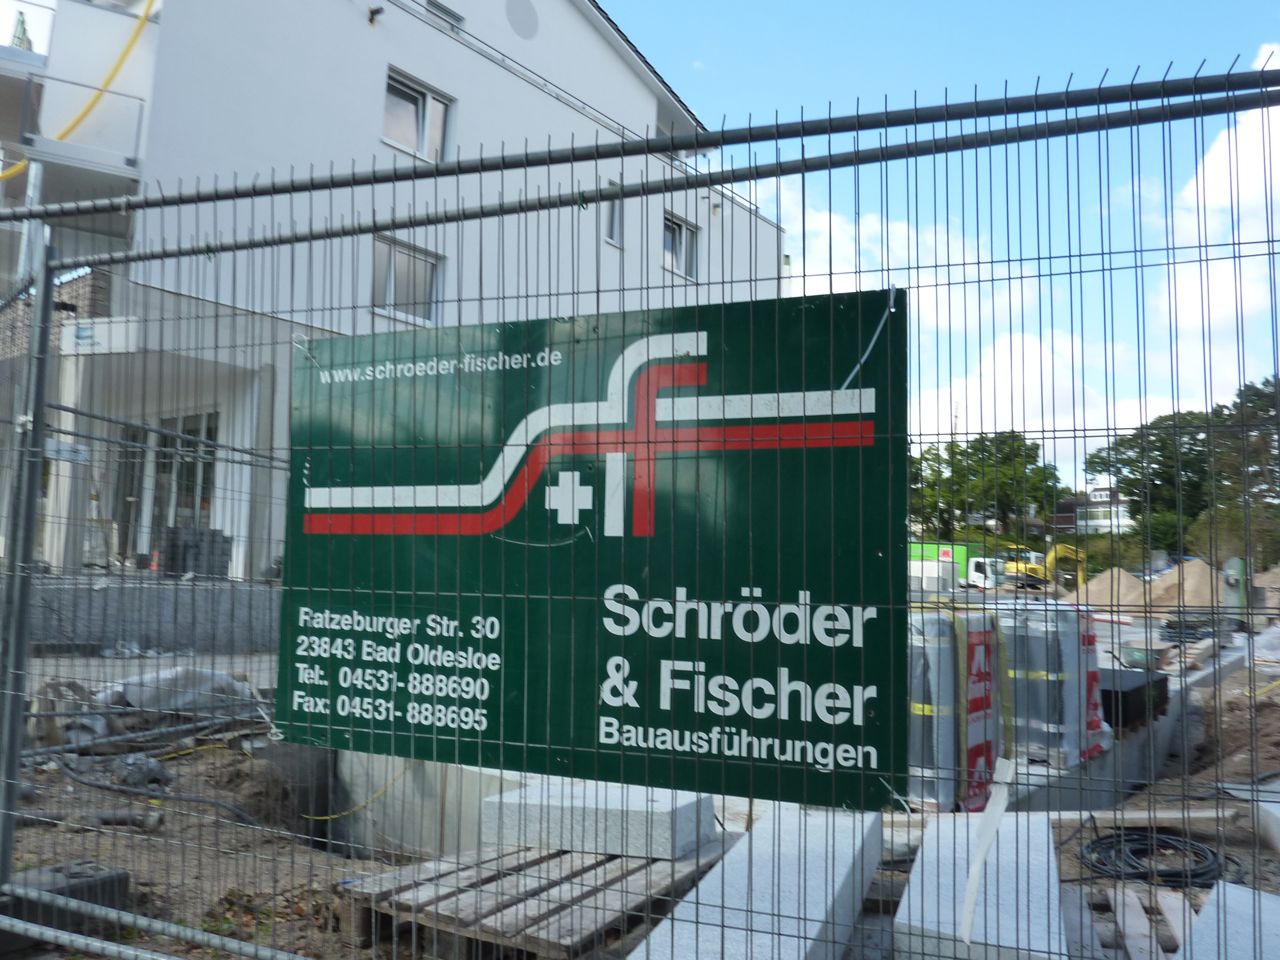 Bild 2 Schröder & Fischer Bauausführungen GmbH in Bad Oldesloe